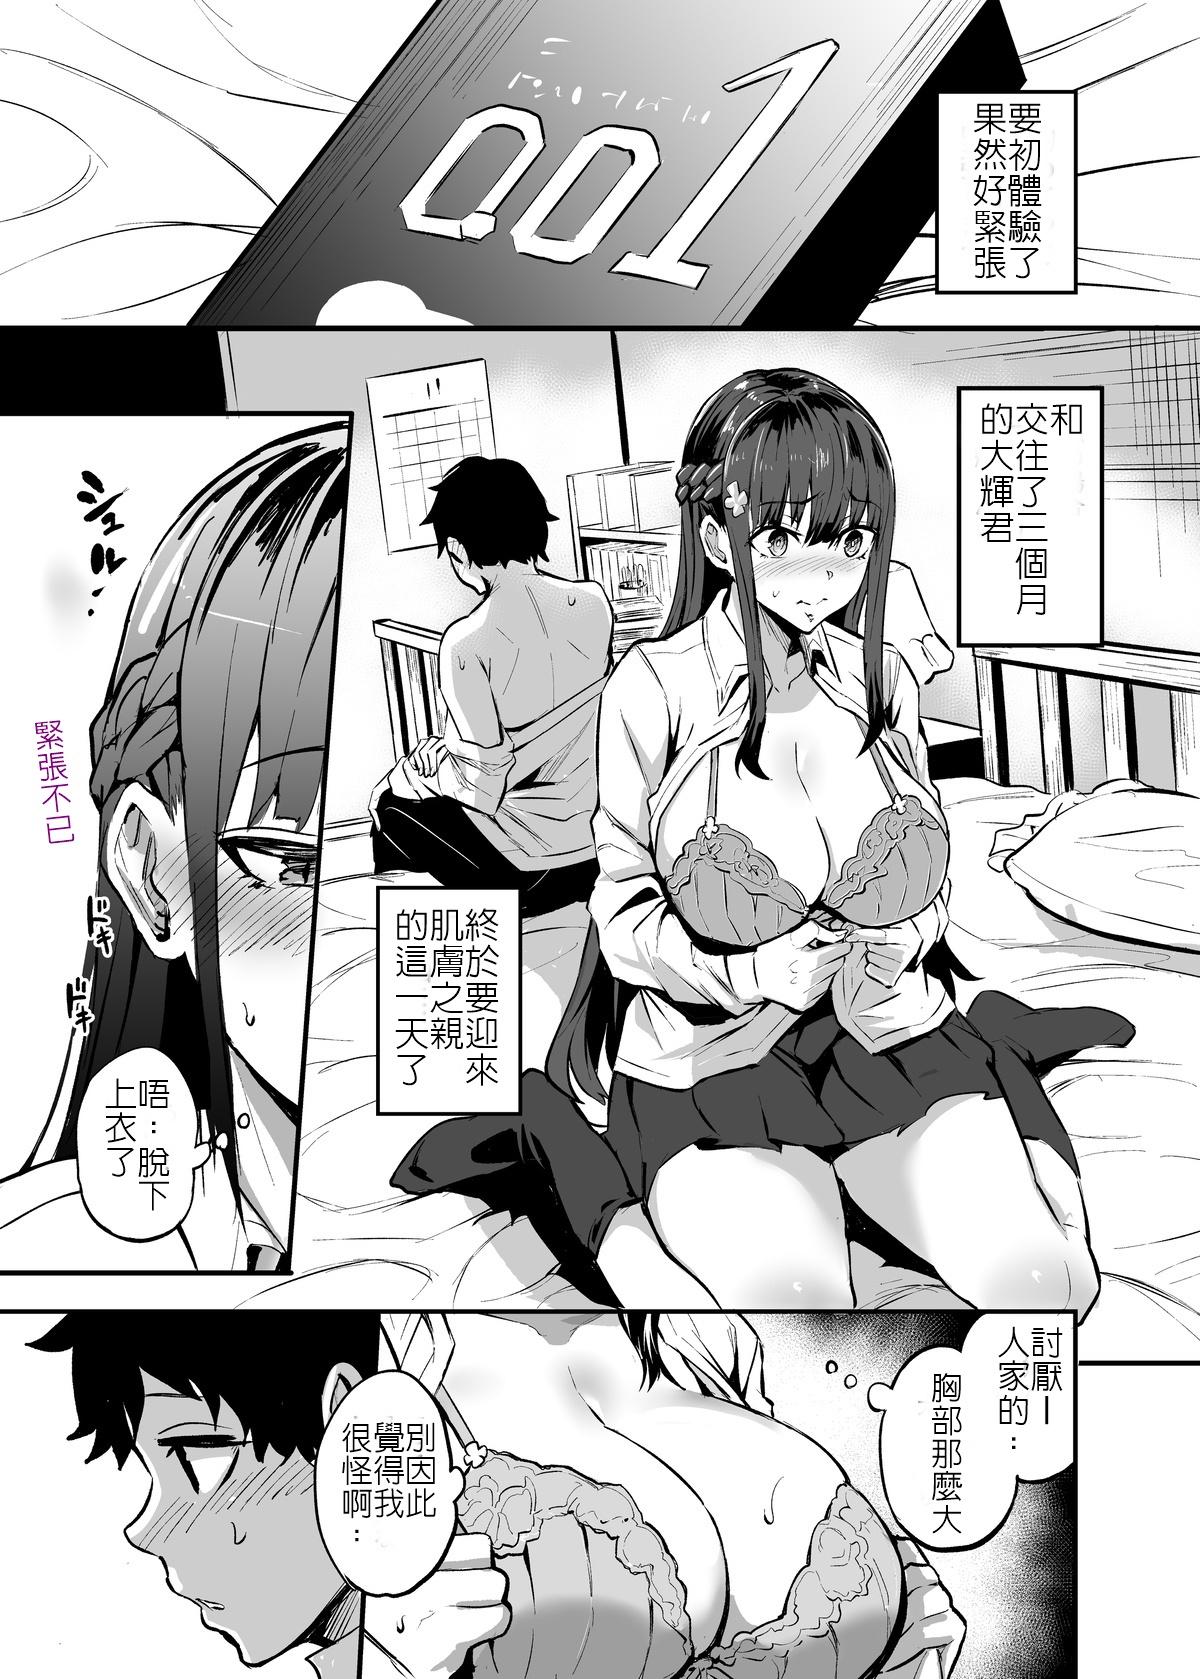 Relax Kurokami no Ko NTR Manga - Original Fake Tits - Picture 1